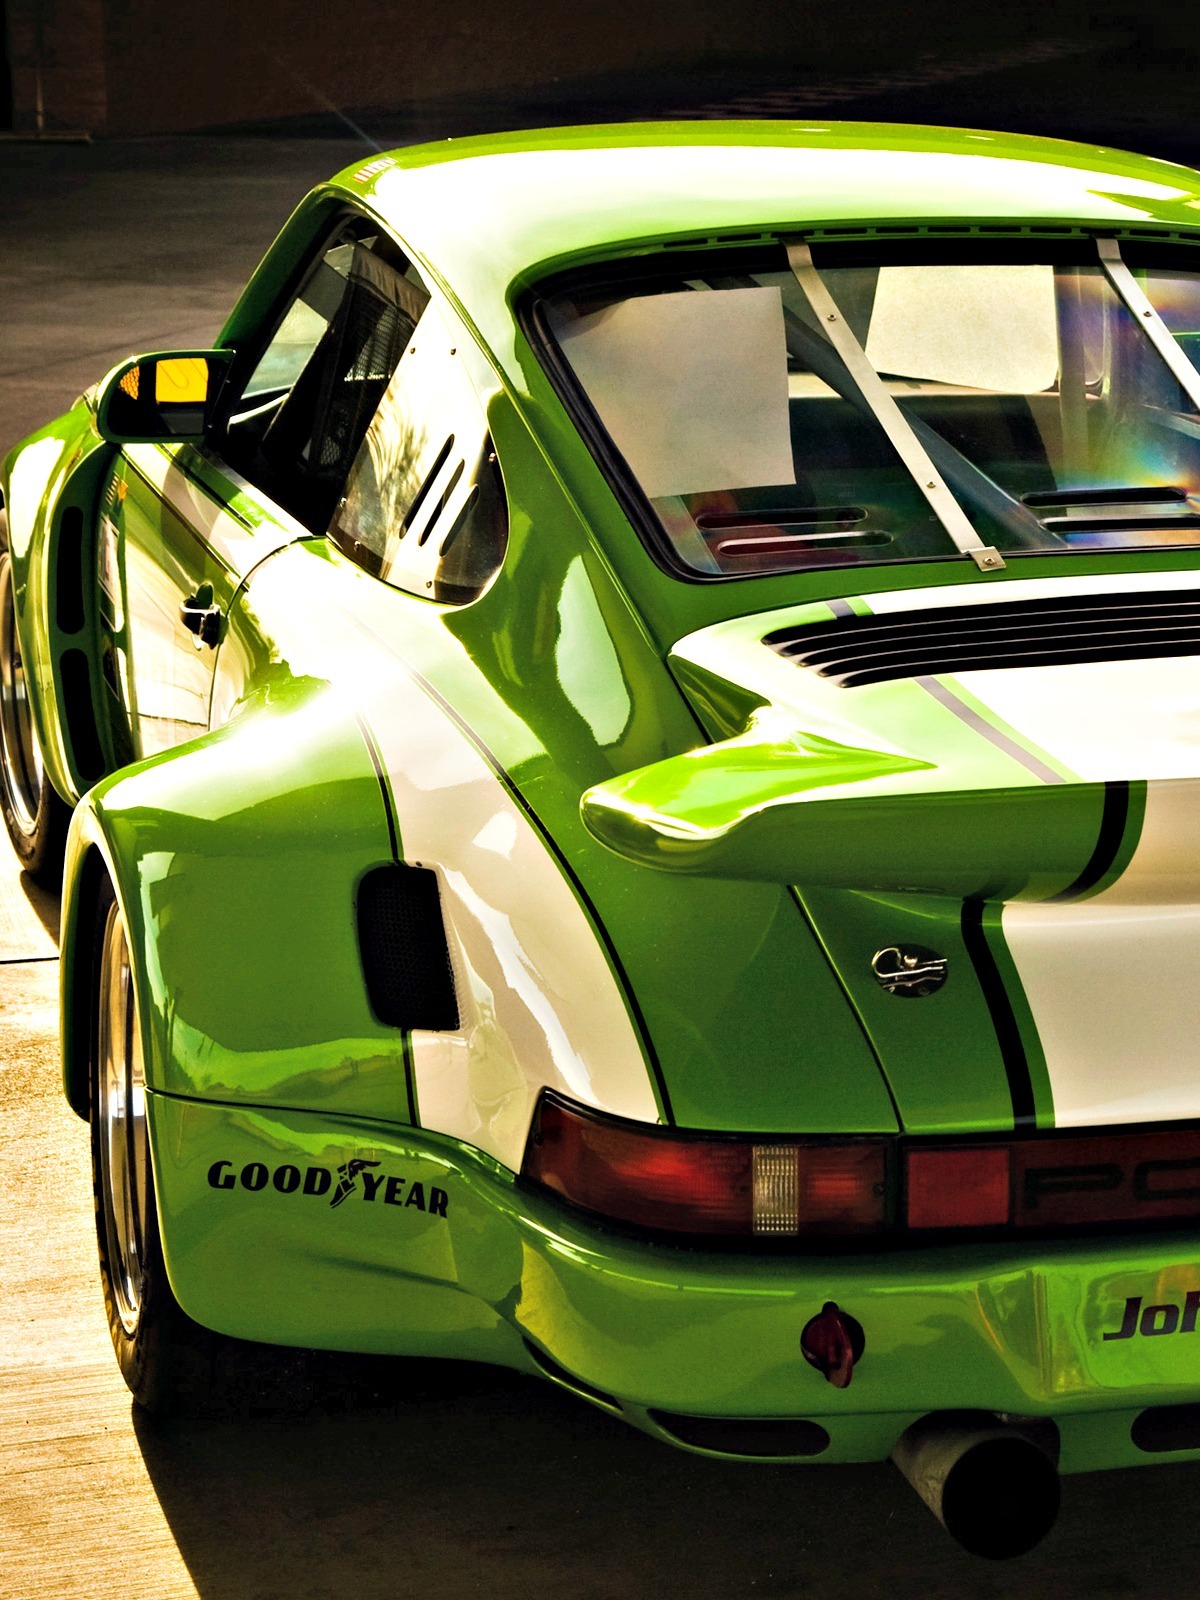 f1championship: “ Porsche 911”